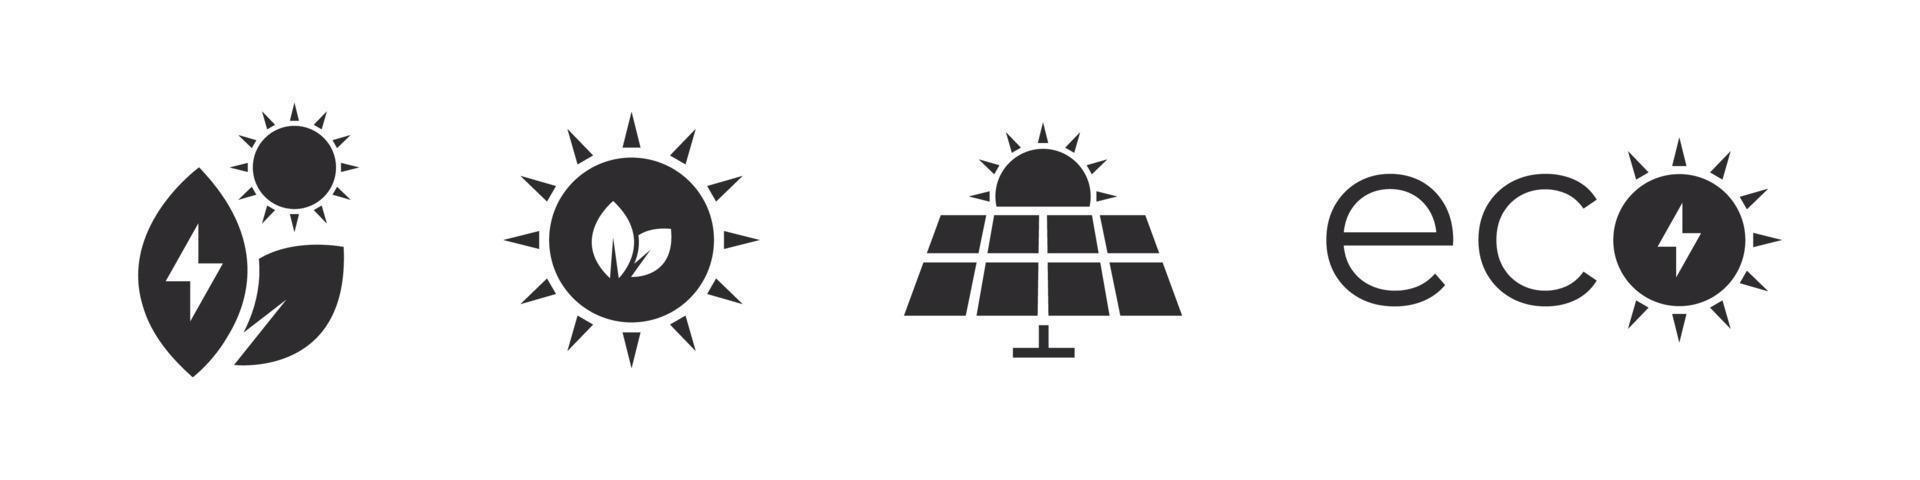 energía solar. electricidad solar iconos de paneles solares. conjunto de iconos de energía verde. iconos de electricidad. ilustración vectorial vector